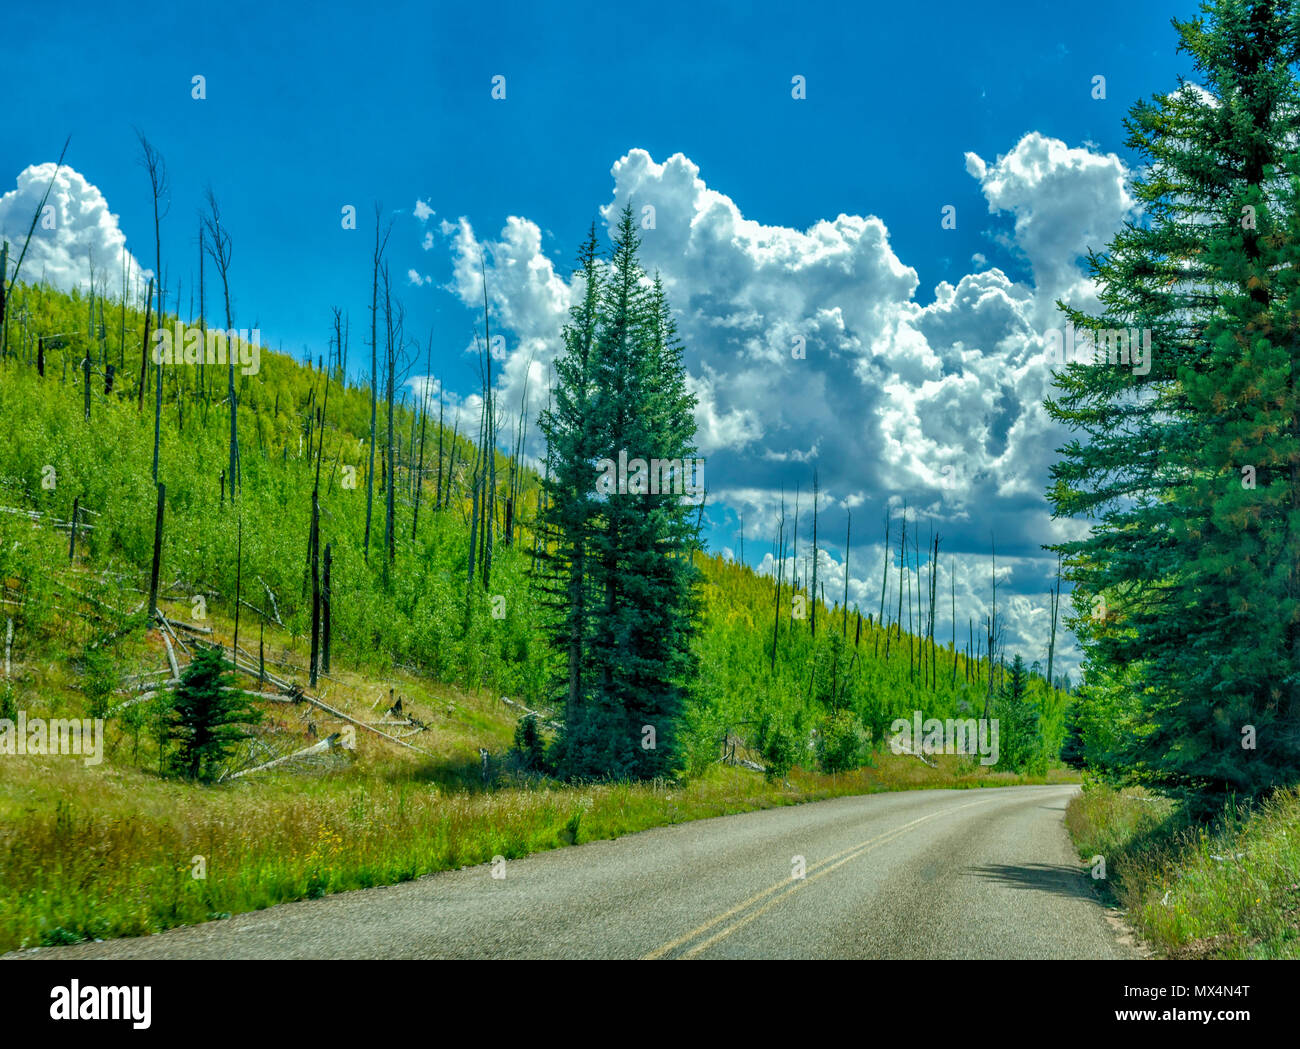 Strada di campagna con il verde delle colline e foreste sotto un cielo azzurro con soffici nuvole. Foto Stock